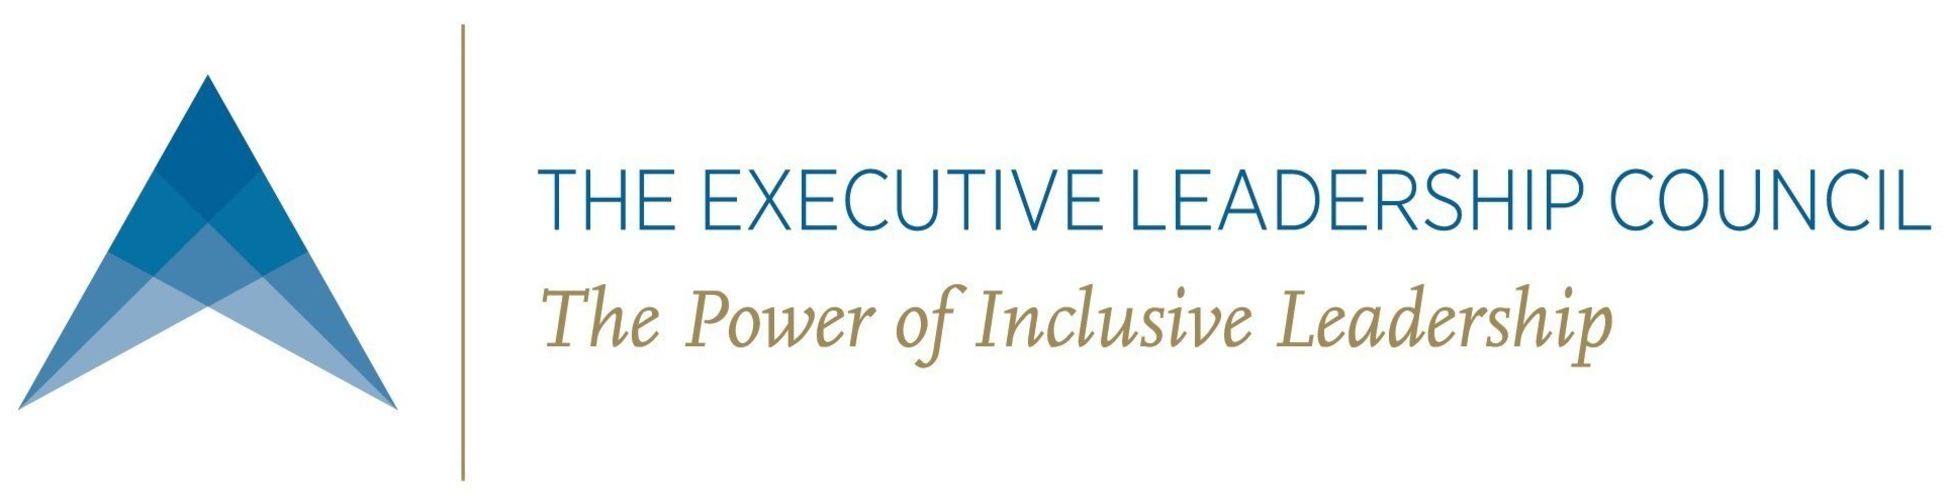 executive leadership council logo